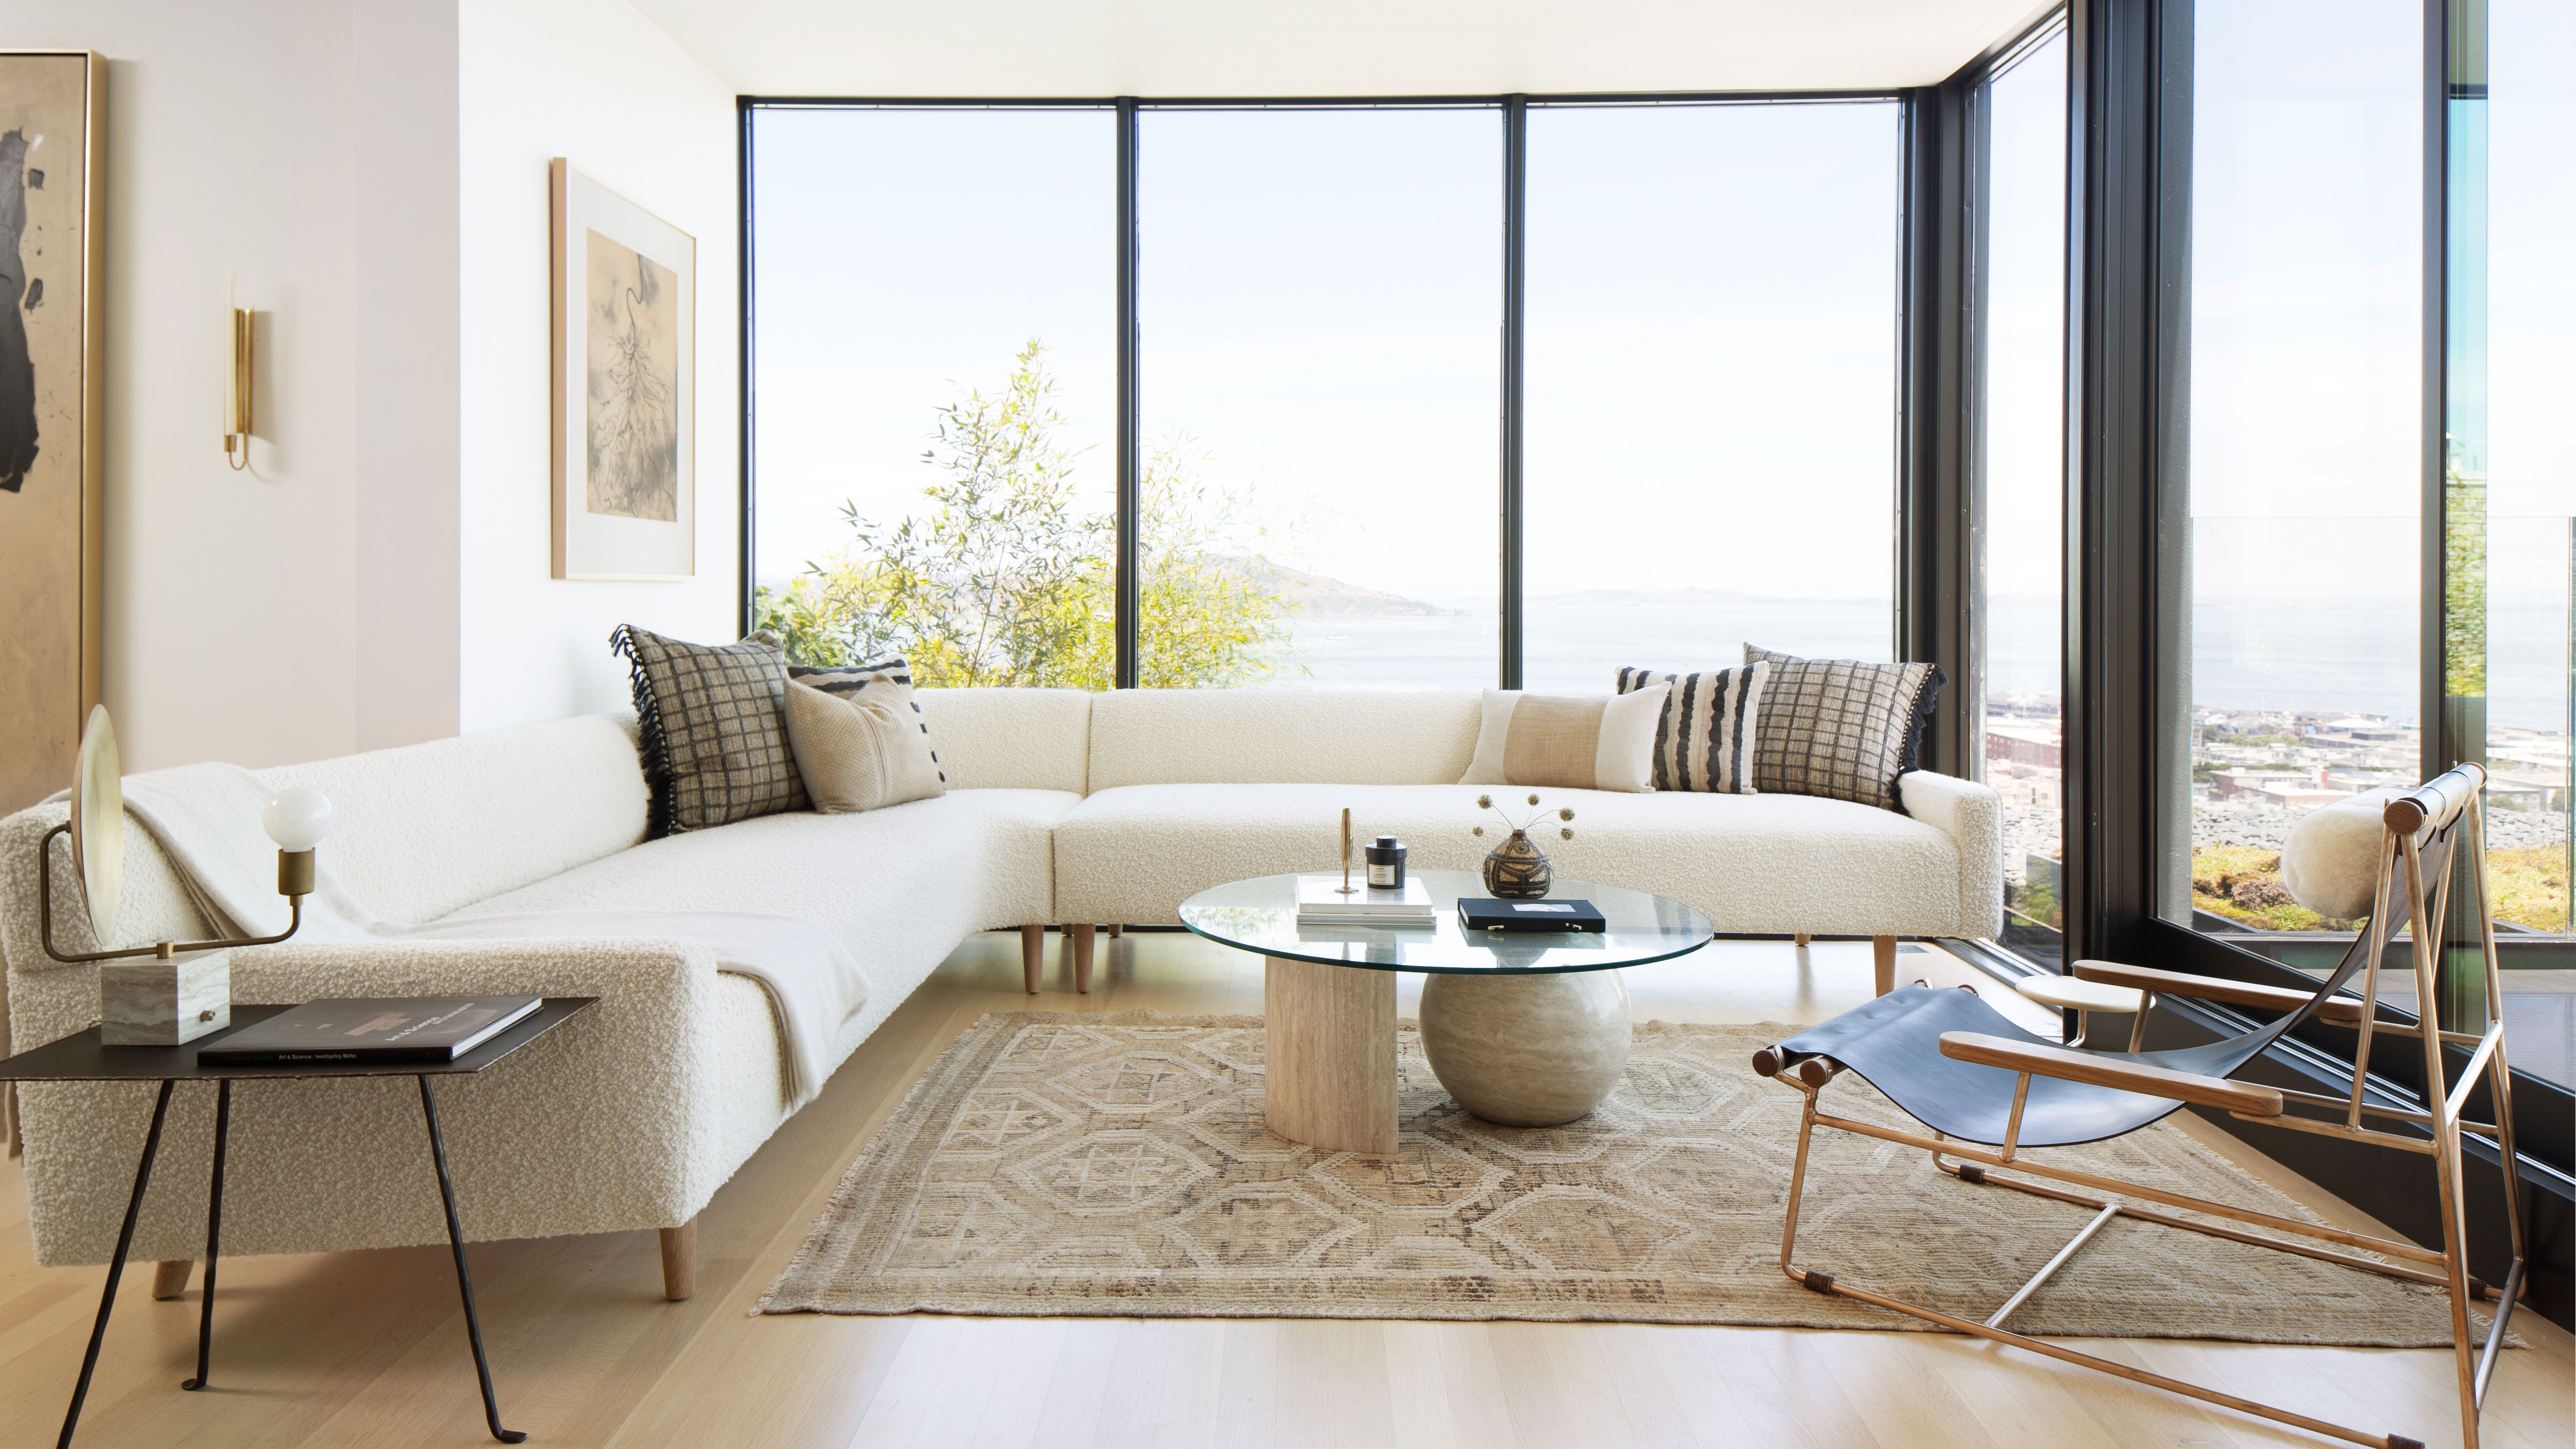 Minimalist living room ideas: 6 simple schemes to spark joy